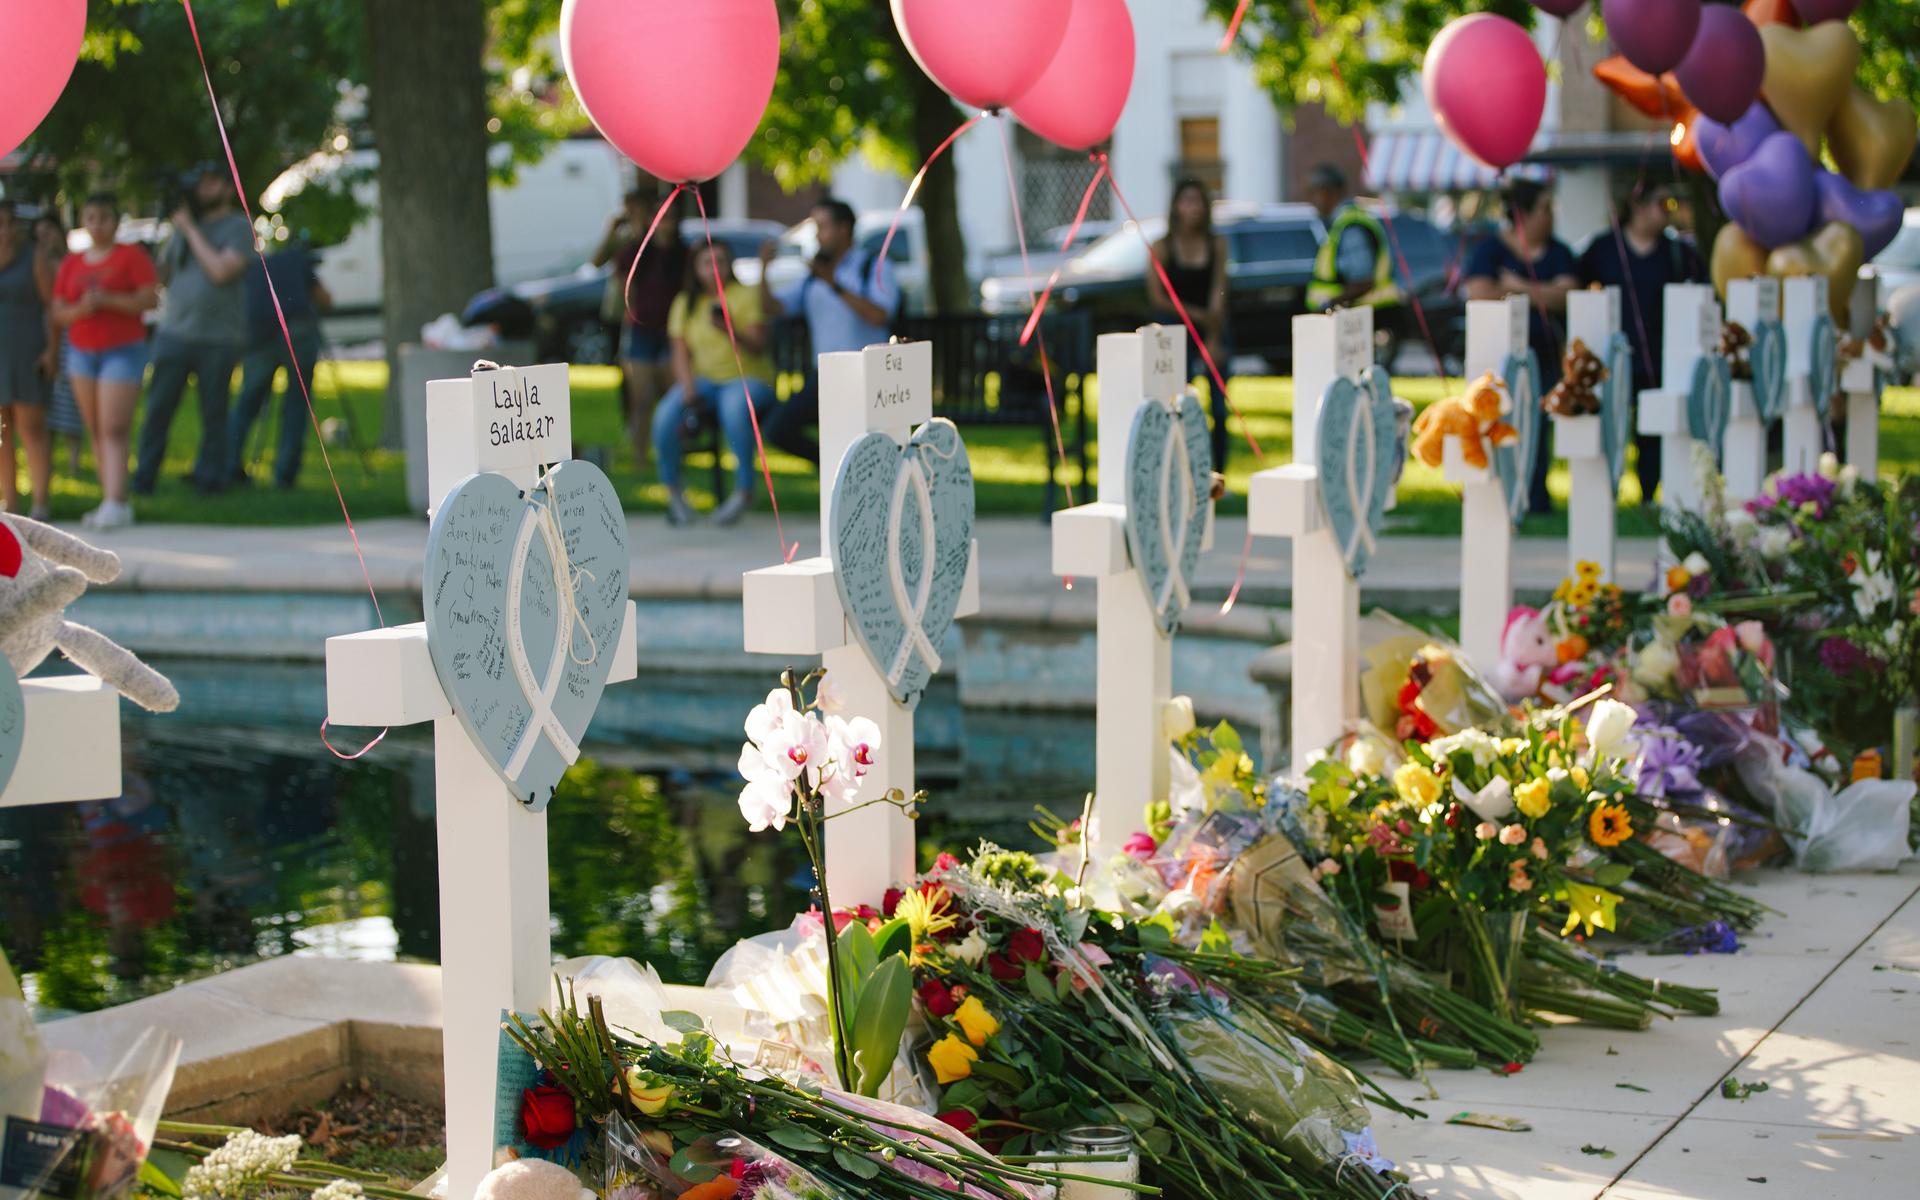 På minnesplatsen har kors rests med namnen på de barn som dödades i skjutningen.